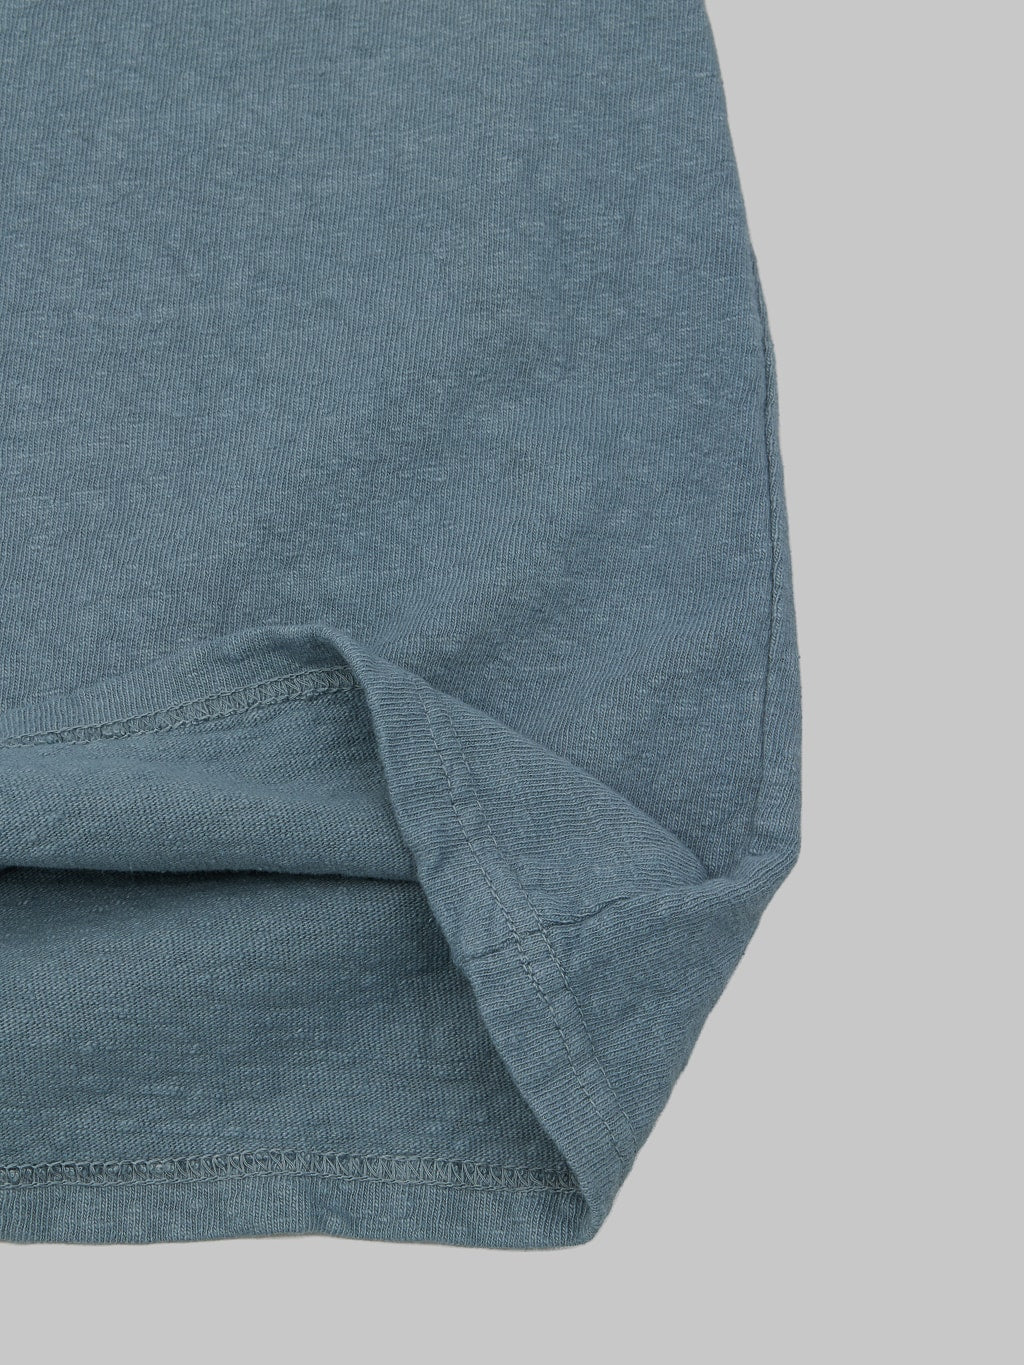 UES No 8 Slub Nep Short Sleeve Tshirt Grey heavy fabric